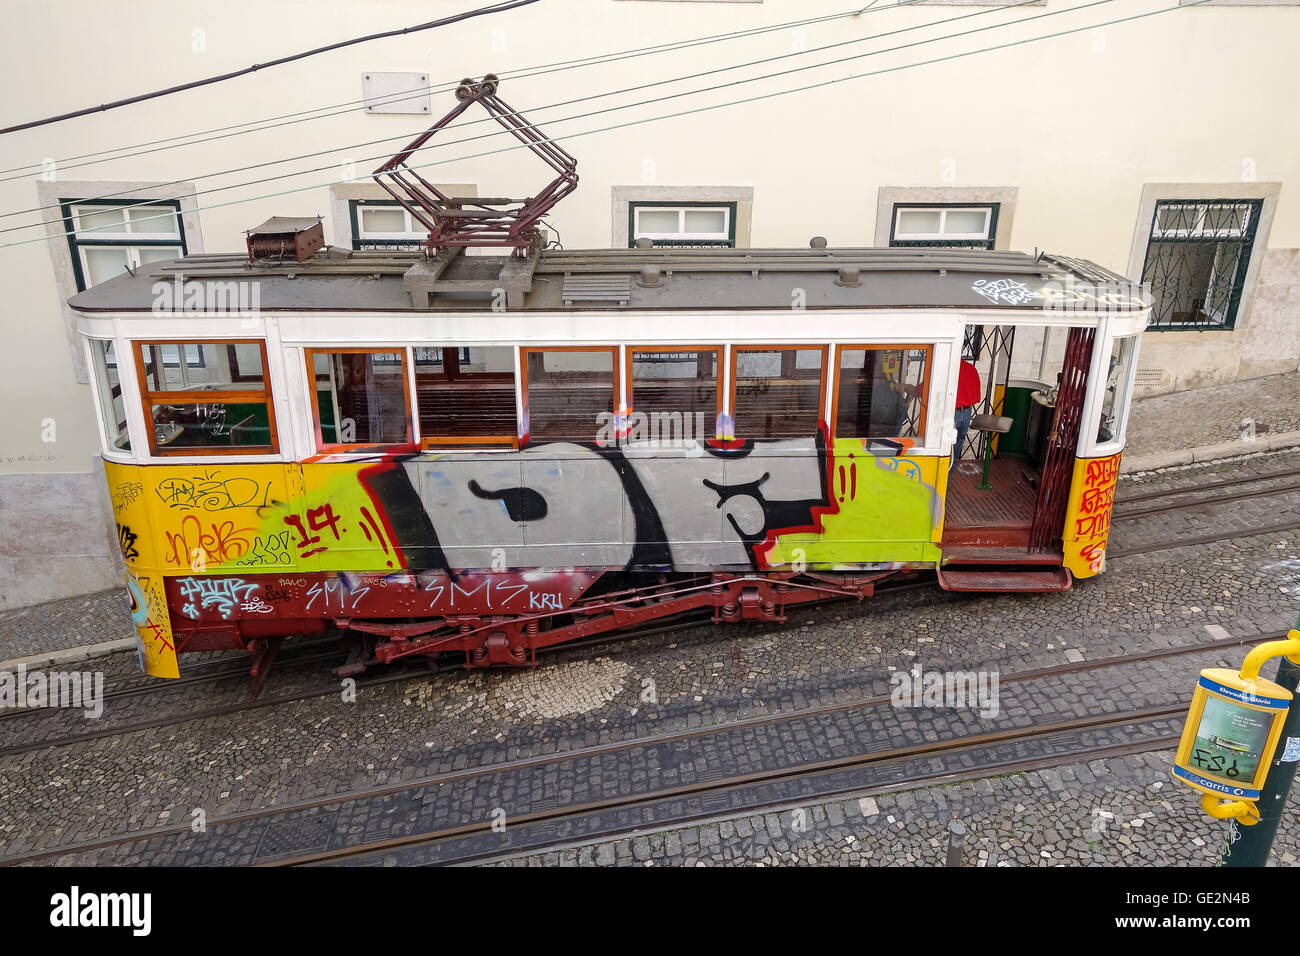 Lisbona, Portogallo - 19 Settembre 2014: Tram, il simbolo della città nella strada stretta di Lisbona. Foto Stock